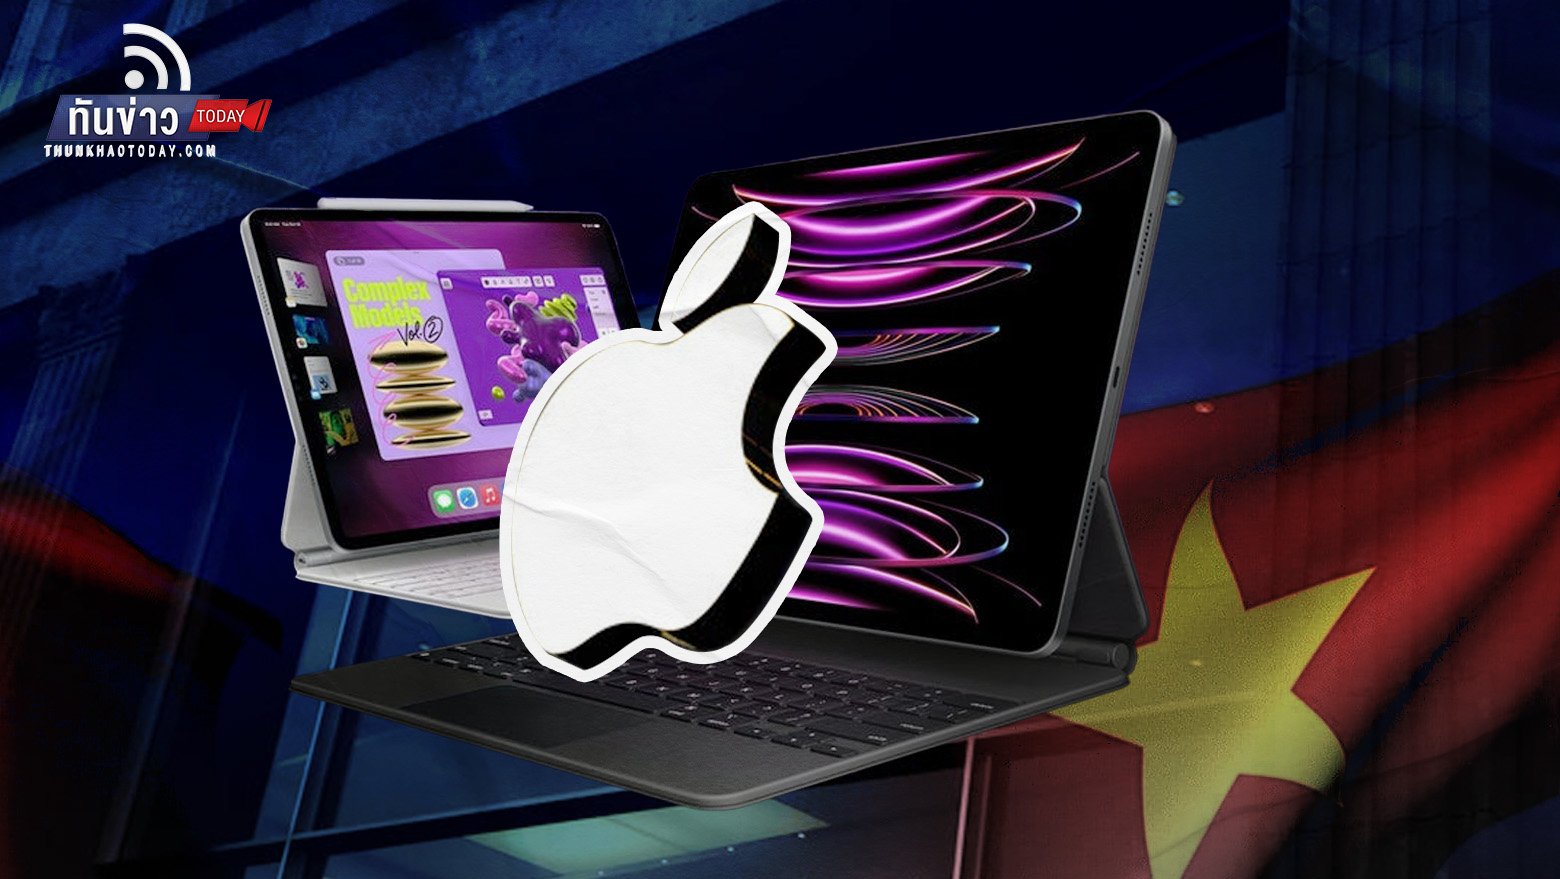 "แอปเปิ้ล" เตรียมย้ายทรัพยากรด้านวิศวกรรม iPad ไปเวียดนาม